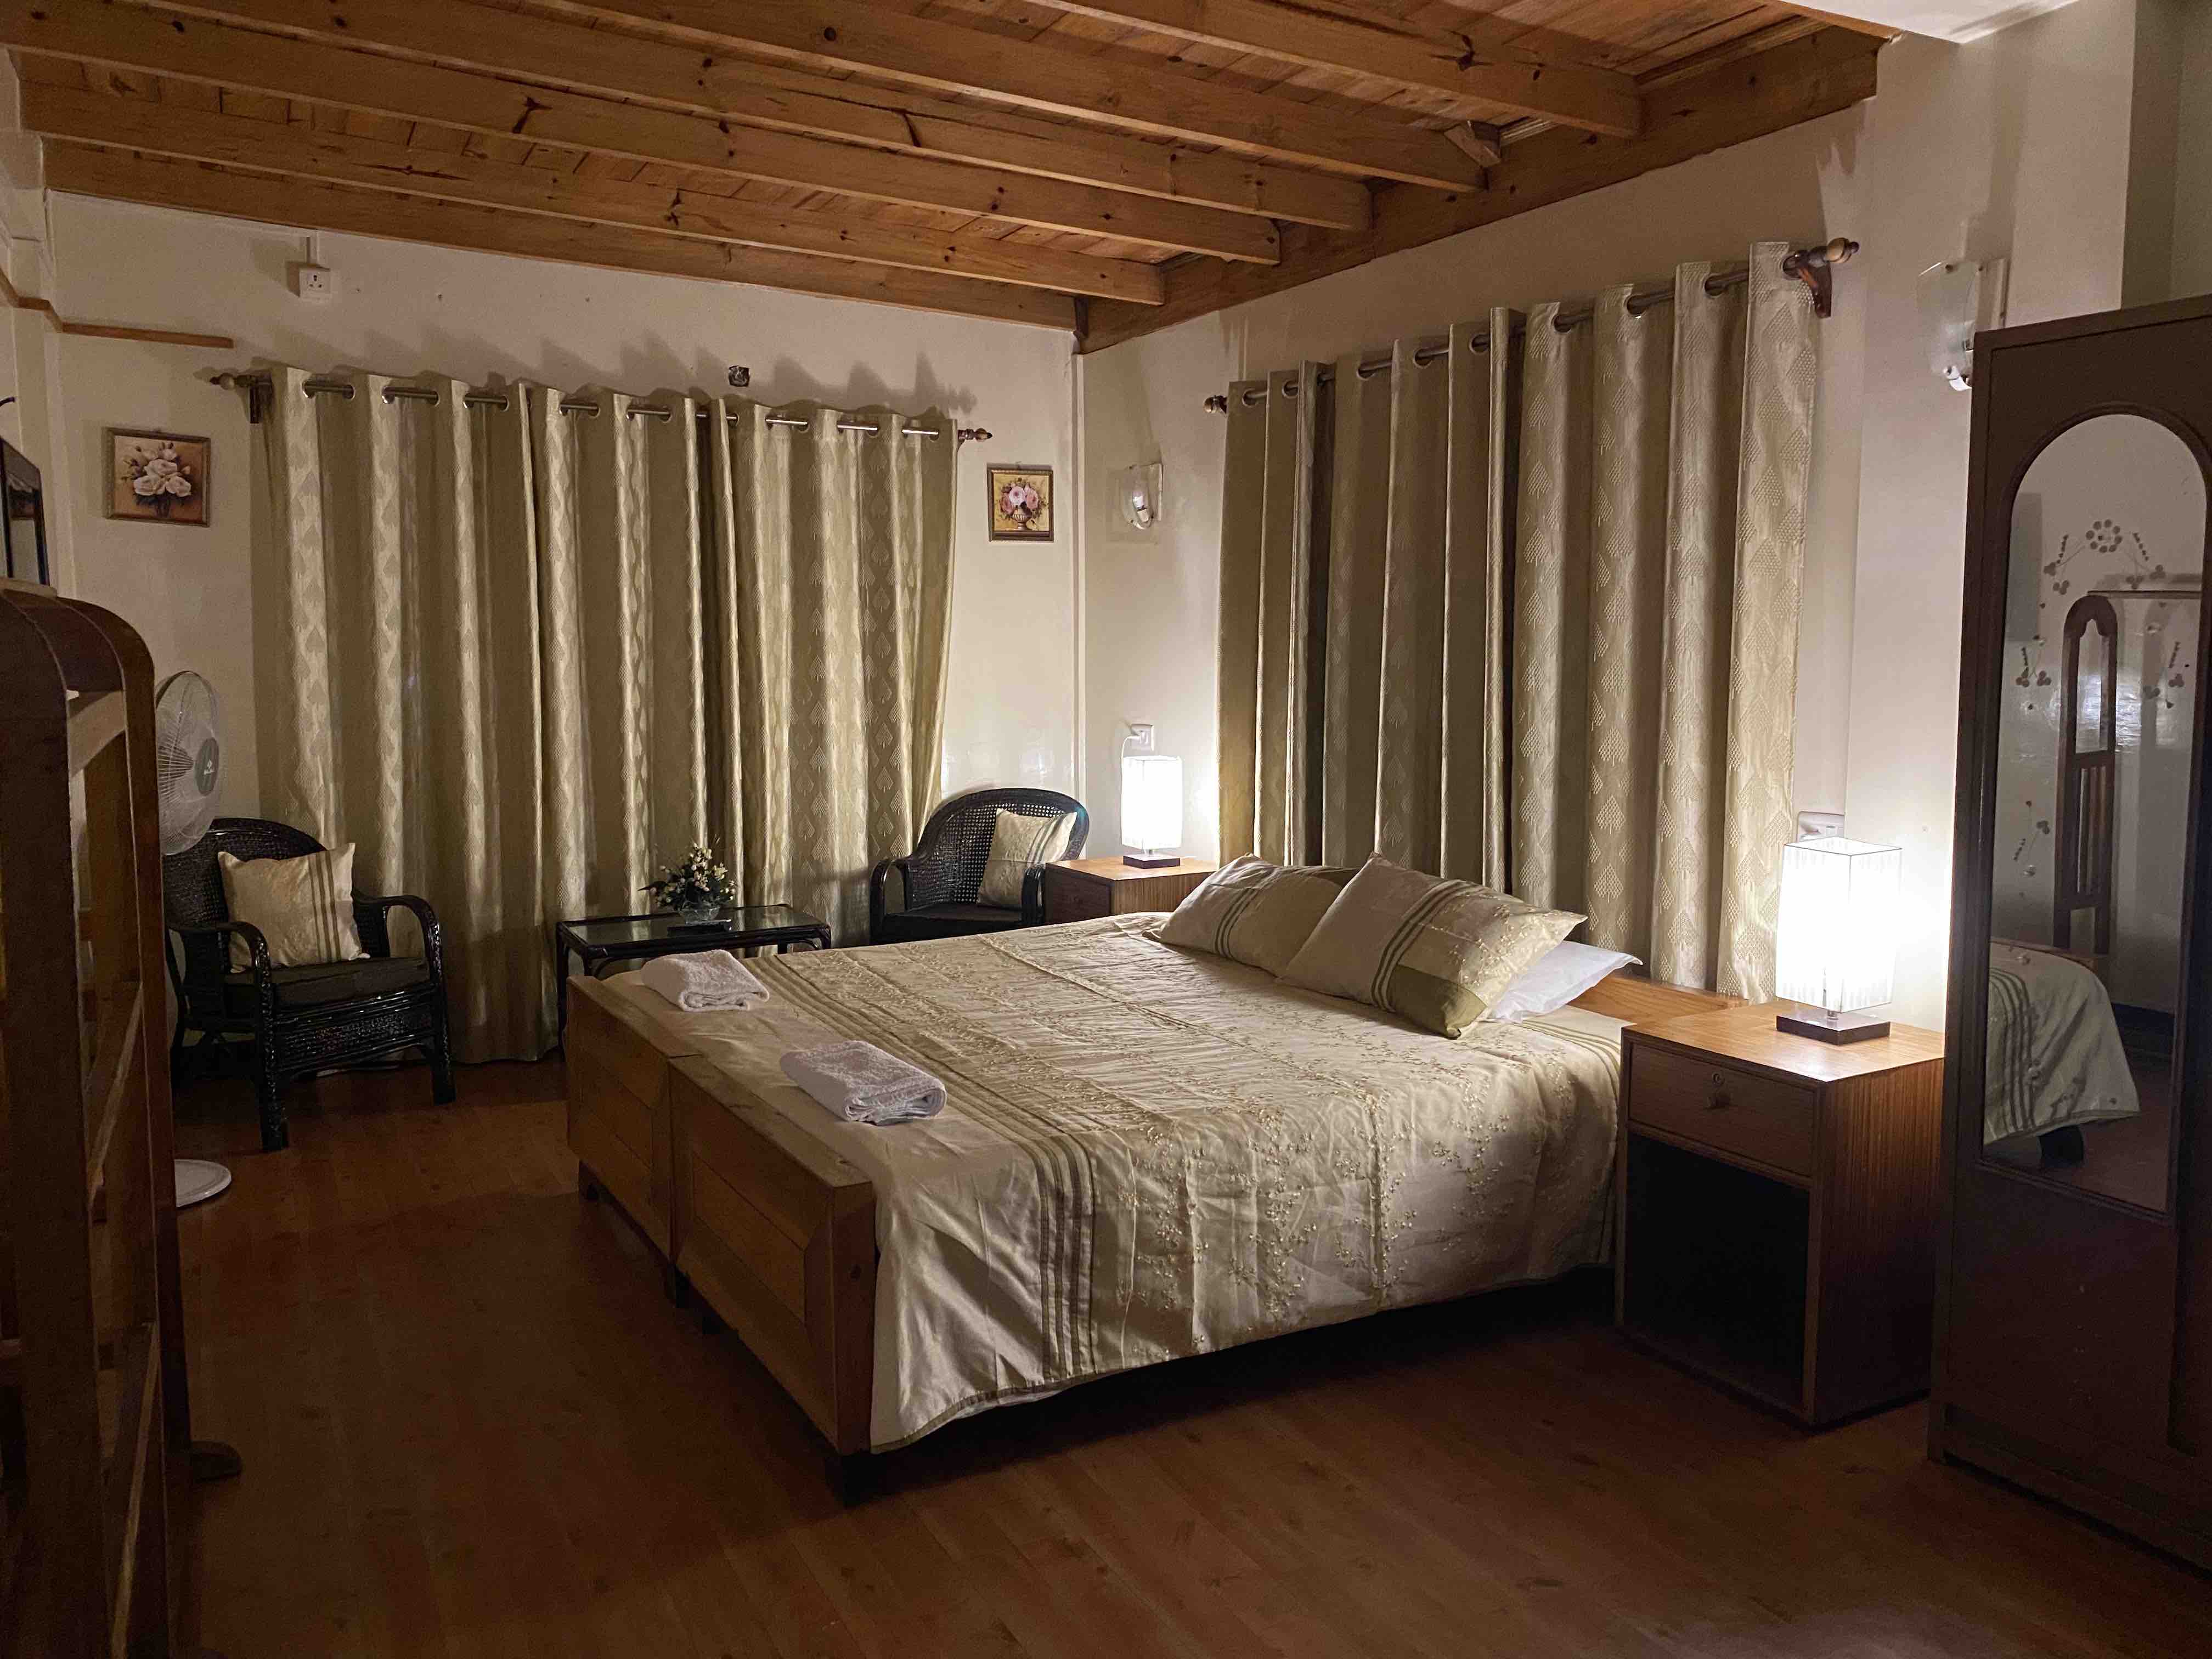 Dormitorio principal con desayuno incluido - Airbnb